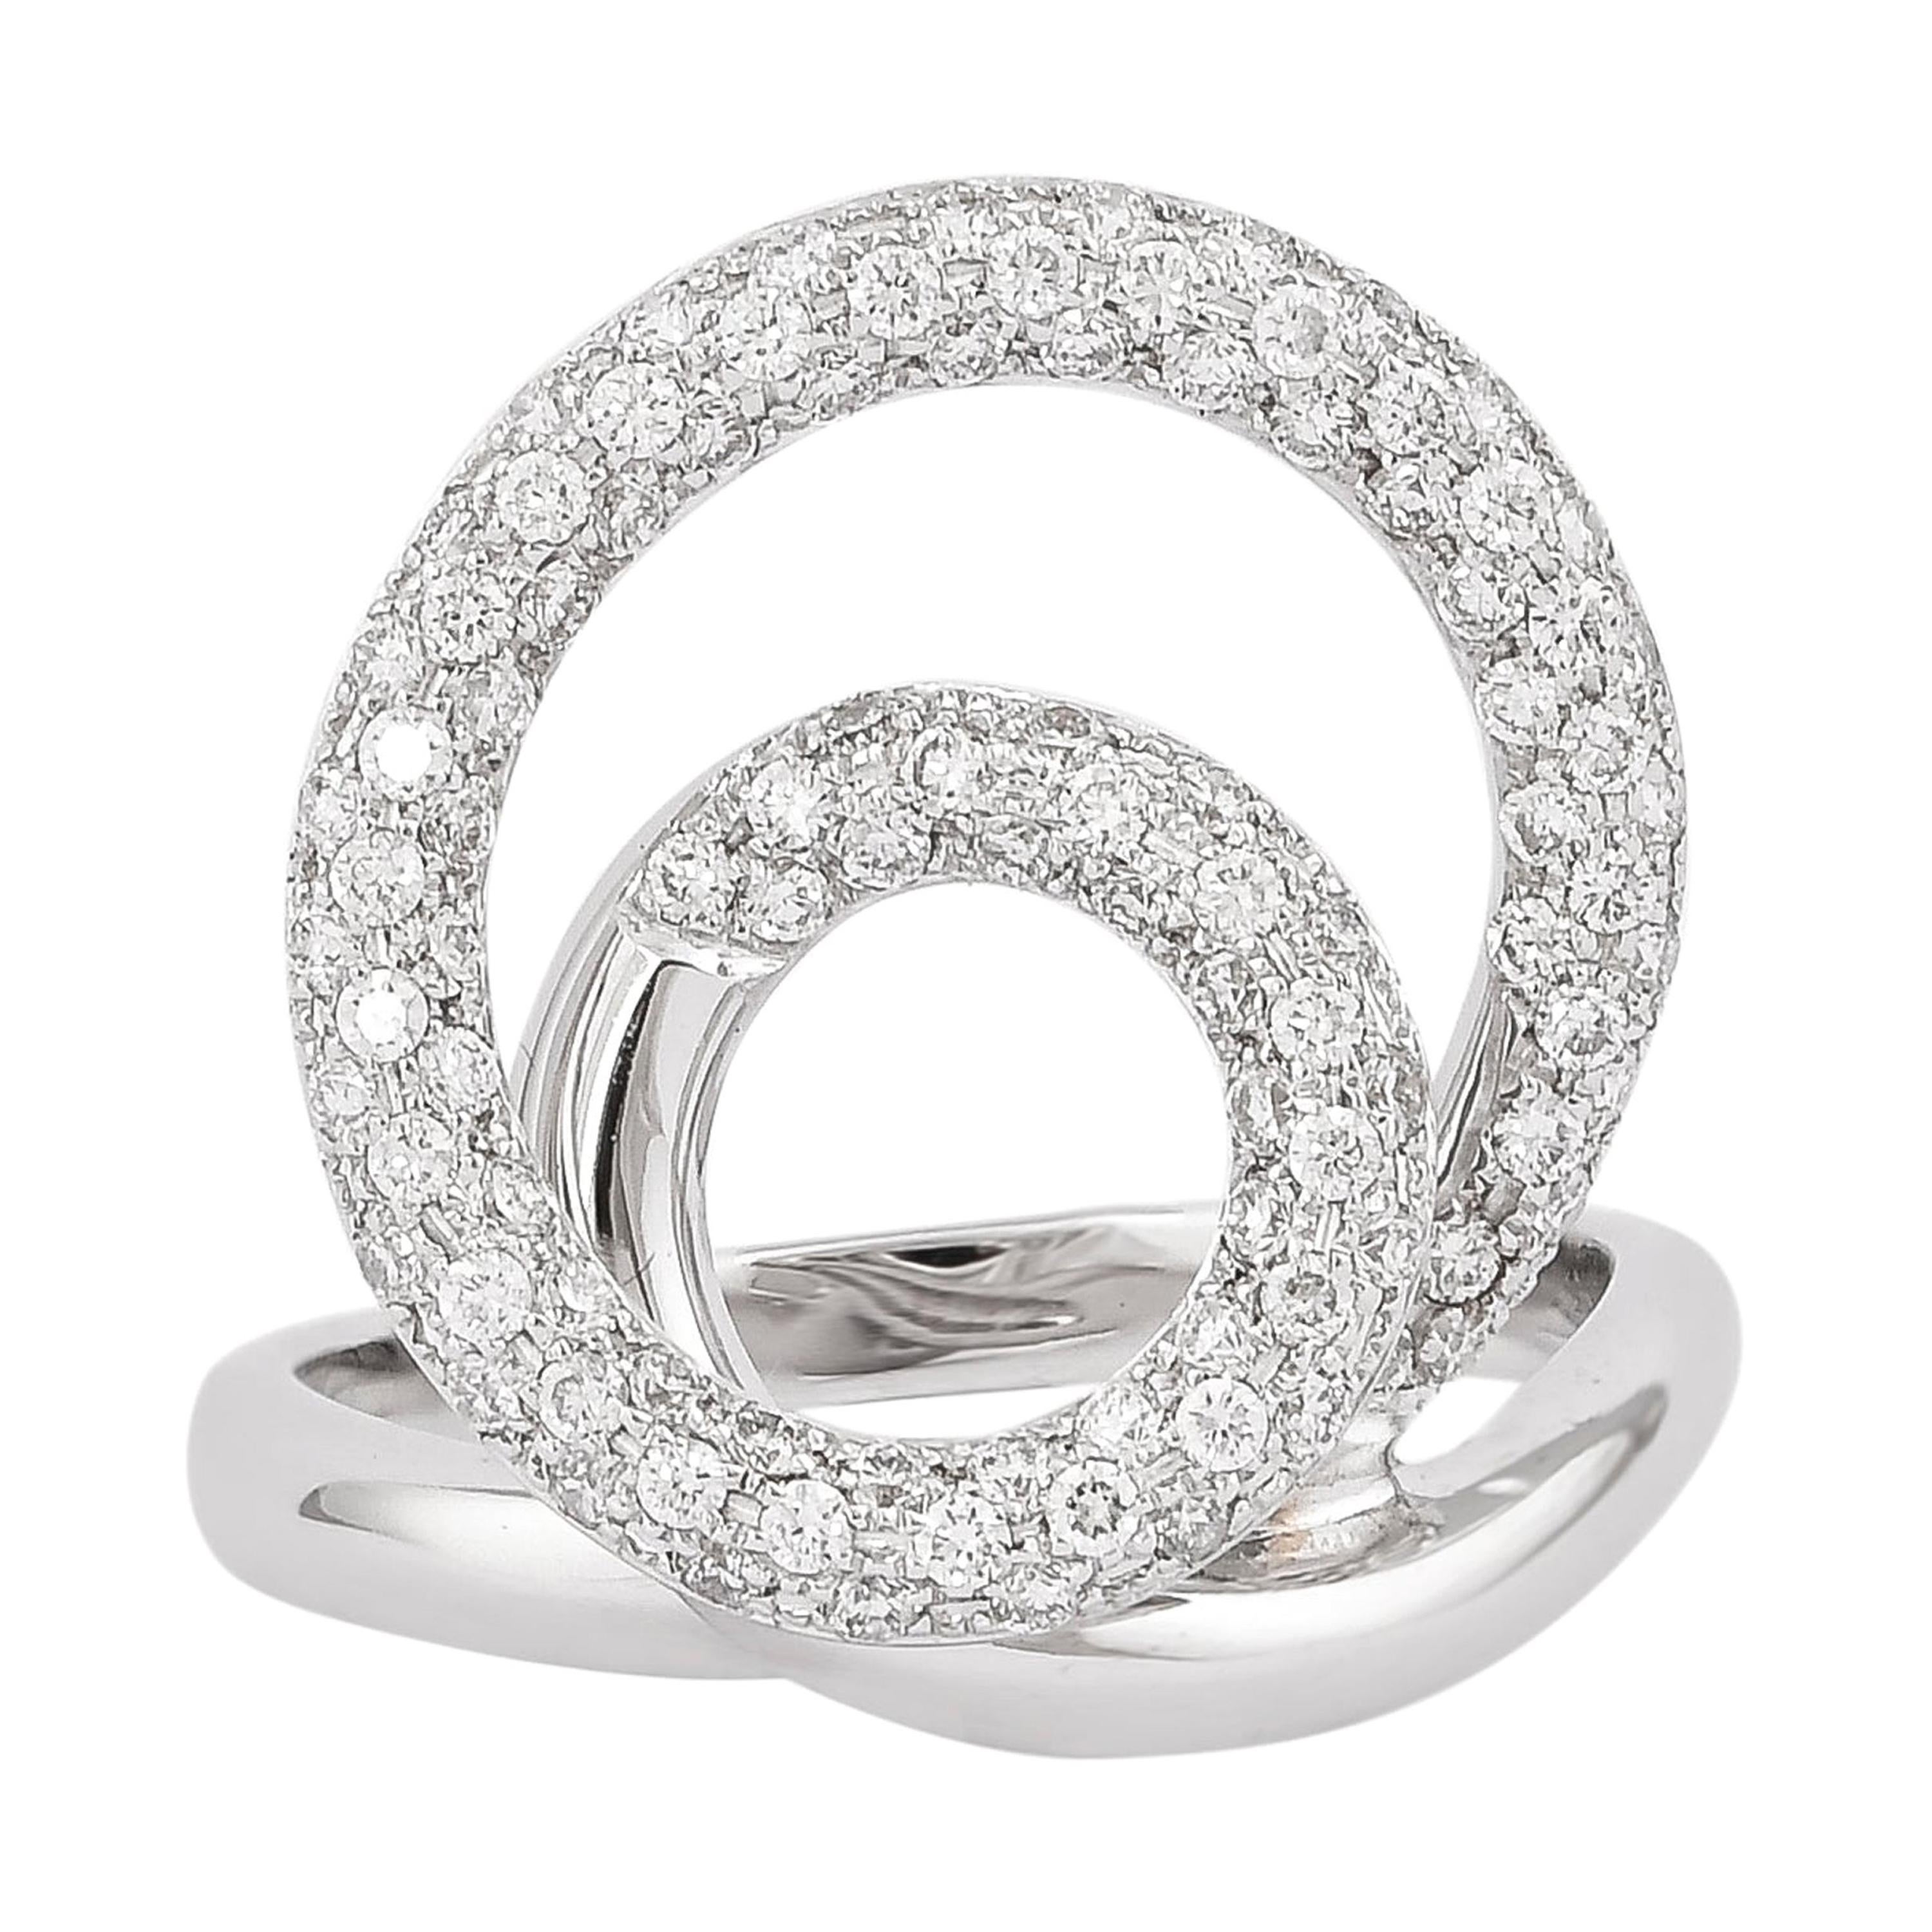 0.82 Carat Diamond Ring in 18 Karat White Gold For Sale